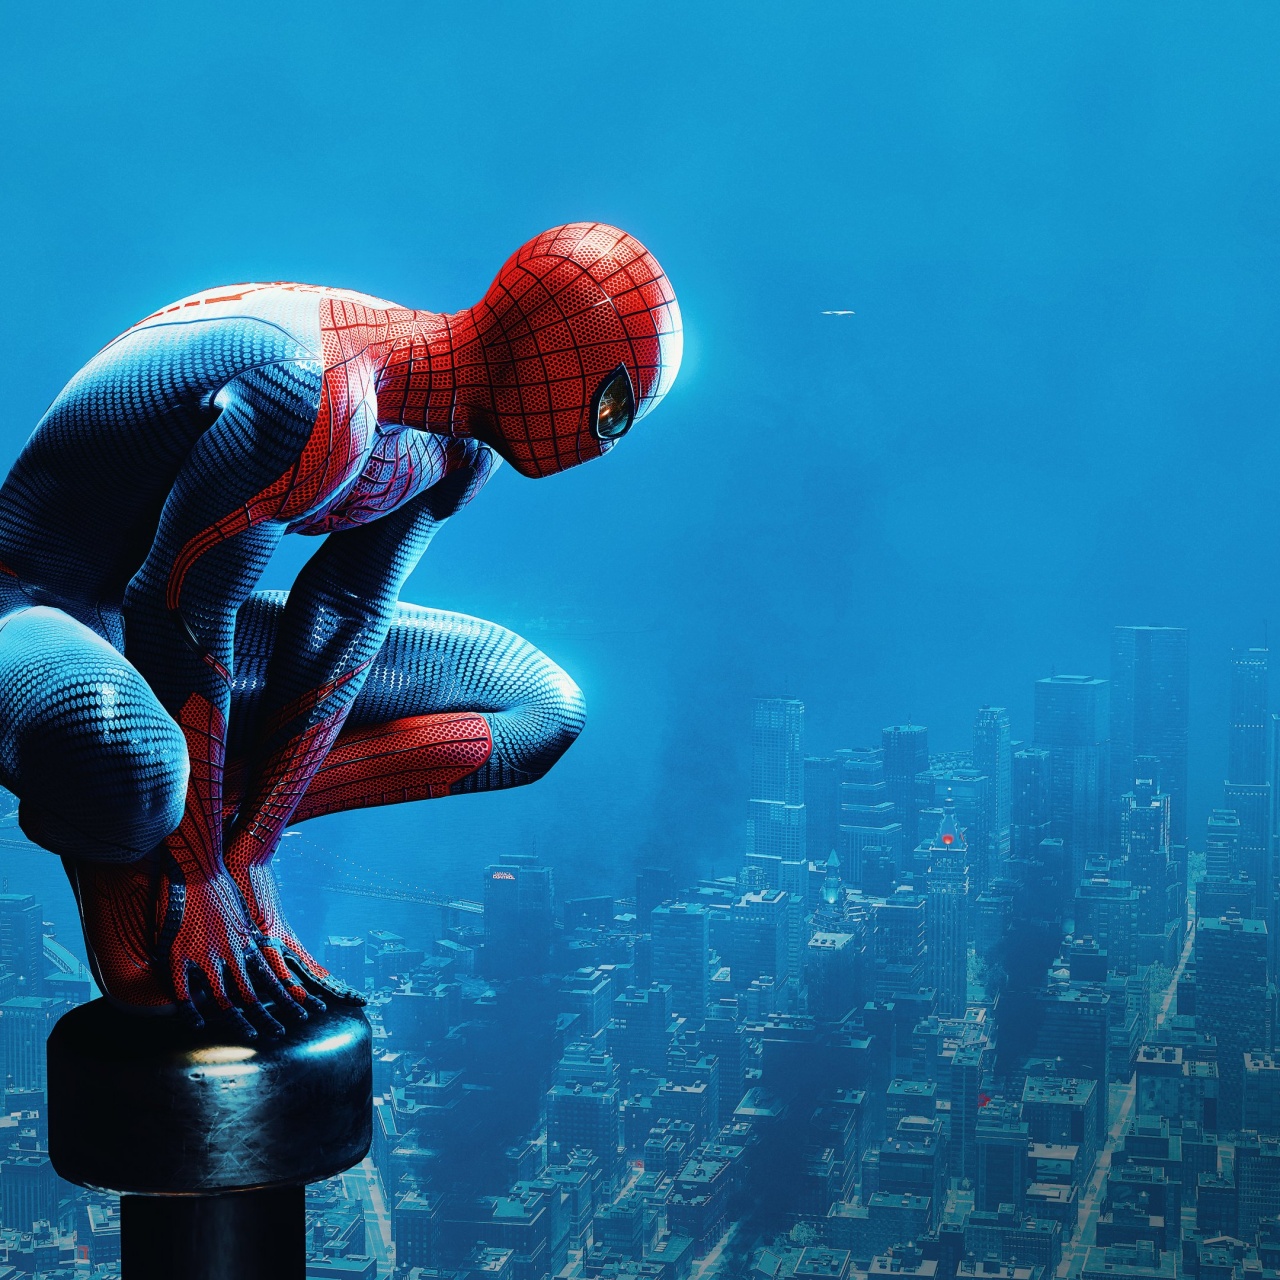 Marvel's Spider-Man Remastered Wallpaper 4K, Peter Parker, PC Games